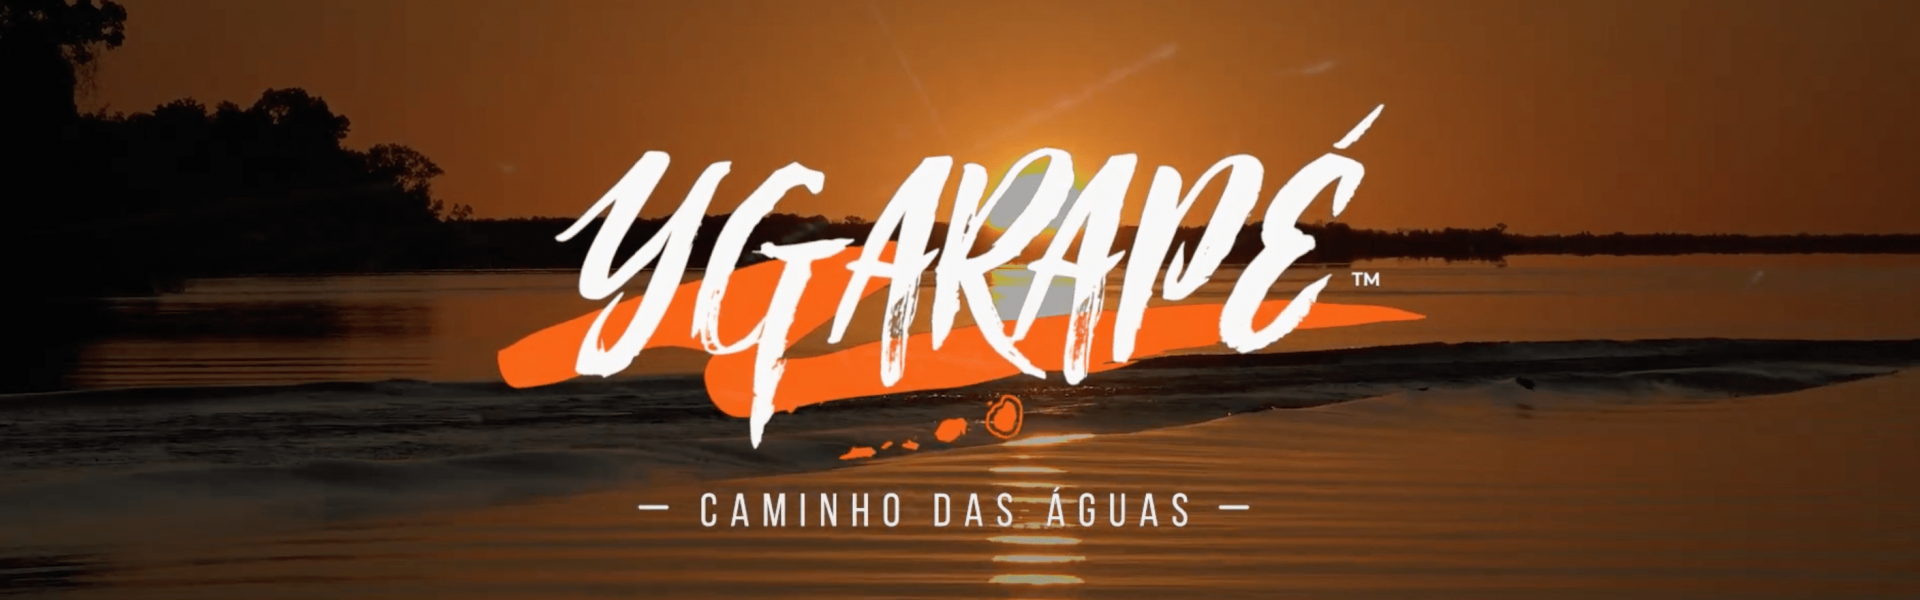 Ygarapé - Caminho das águas: novo programa estreia nesta sexta-feira na Fish TV